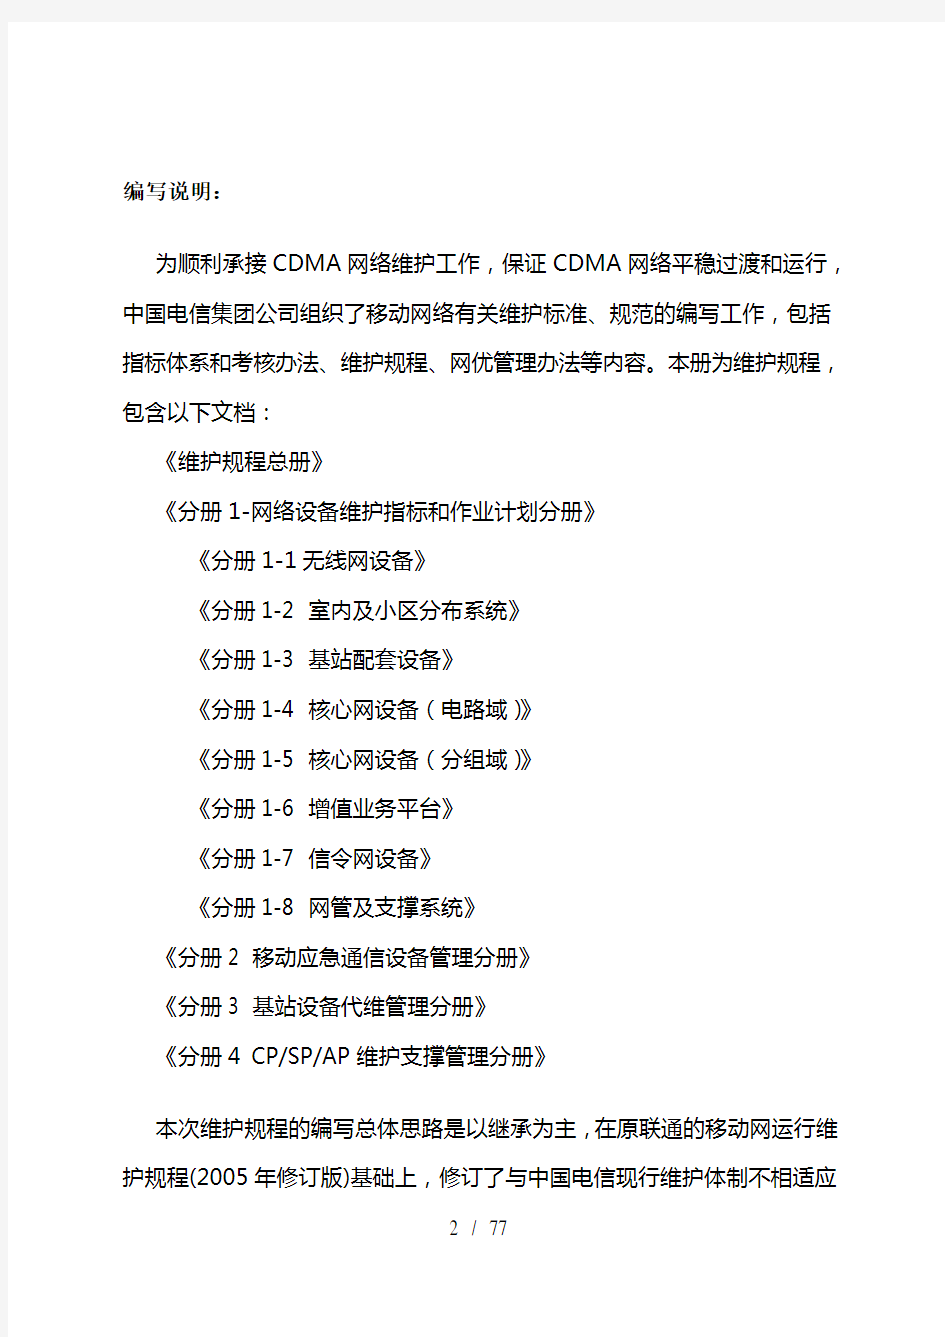  规程总册中国电信移动通信网络运行维护规程